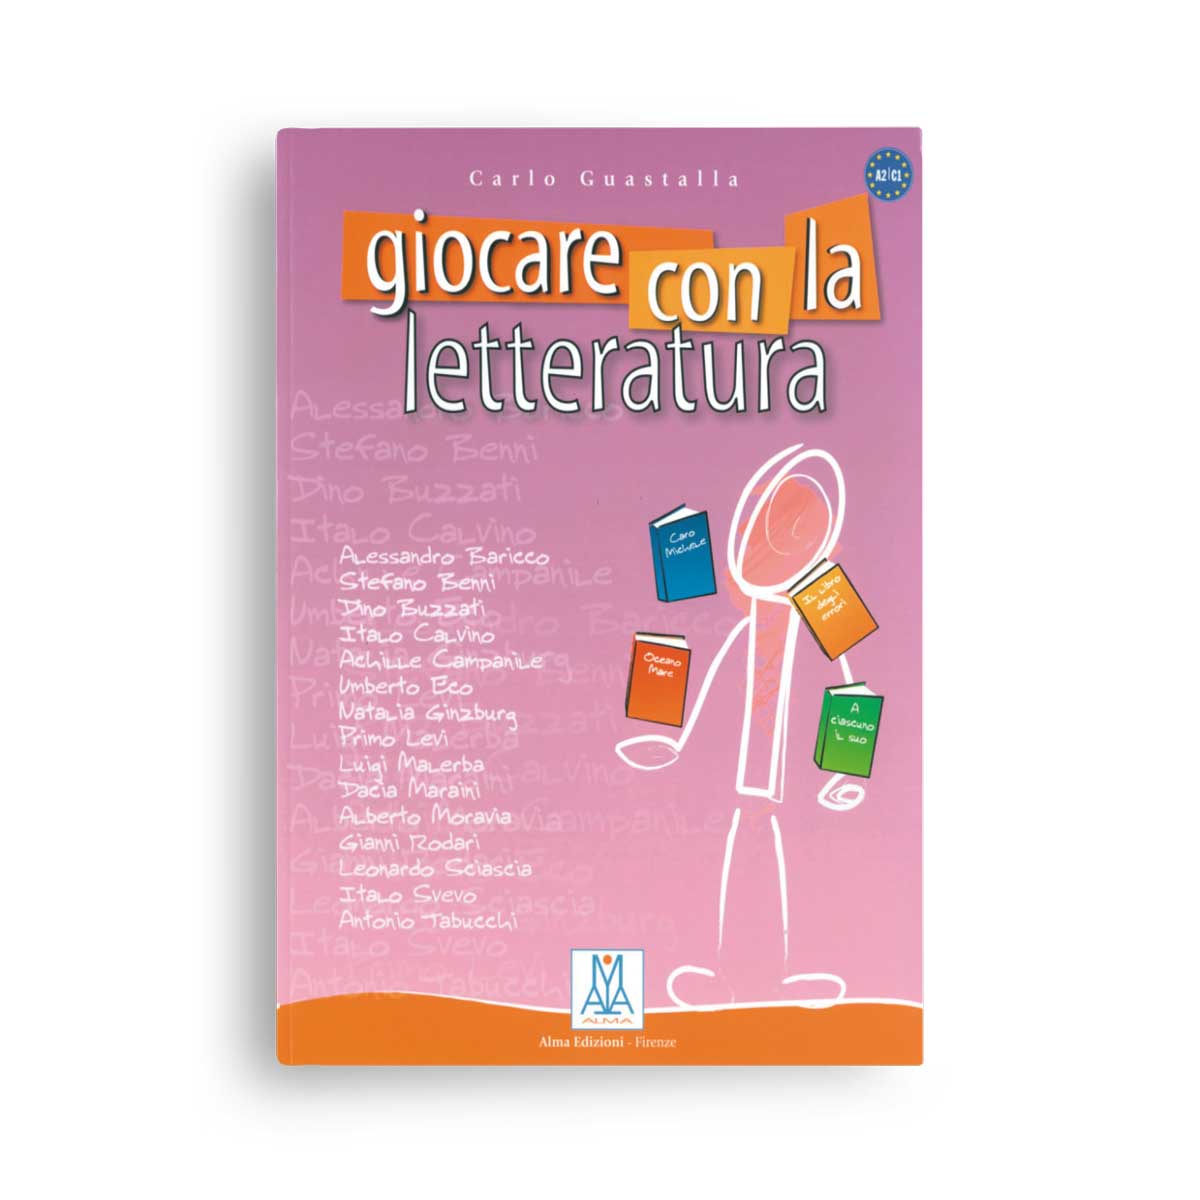 ALMA Edizioni – Giocare con la letteratura (A2-C1)